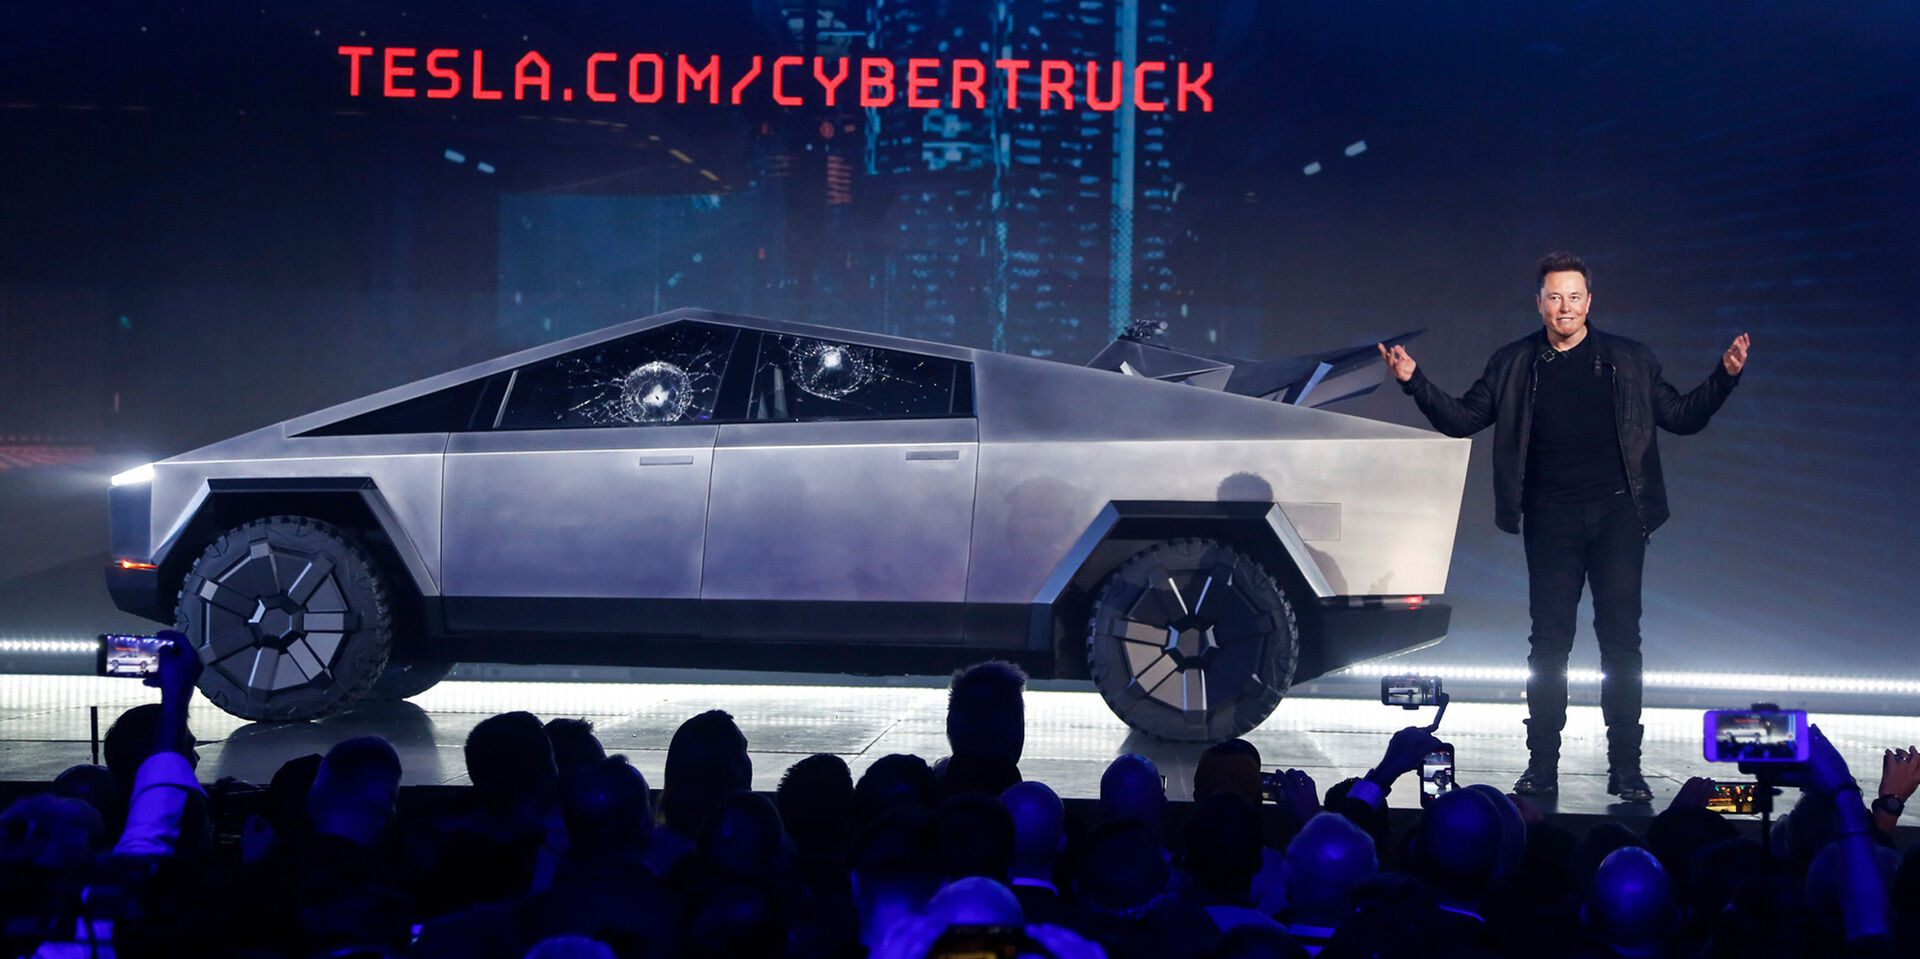 Ir šito mes visi taip laukėme? Elonas pristatė elektrinį „Cybertruck“ pikapą: puikios specifikacijos, labai gera kaina, bet šokiruojantis dizainas nepaliko abejingų – akcijų krytis ir šėlstantys internautai foto 4